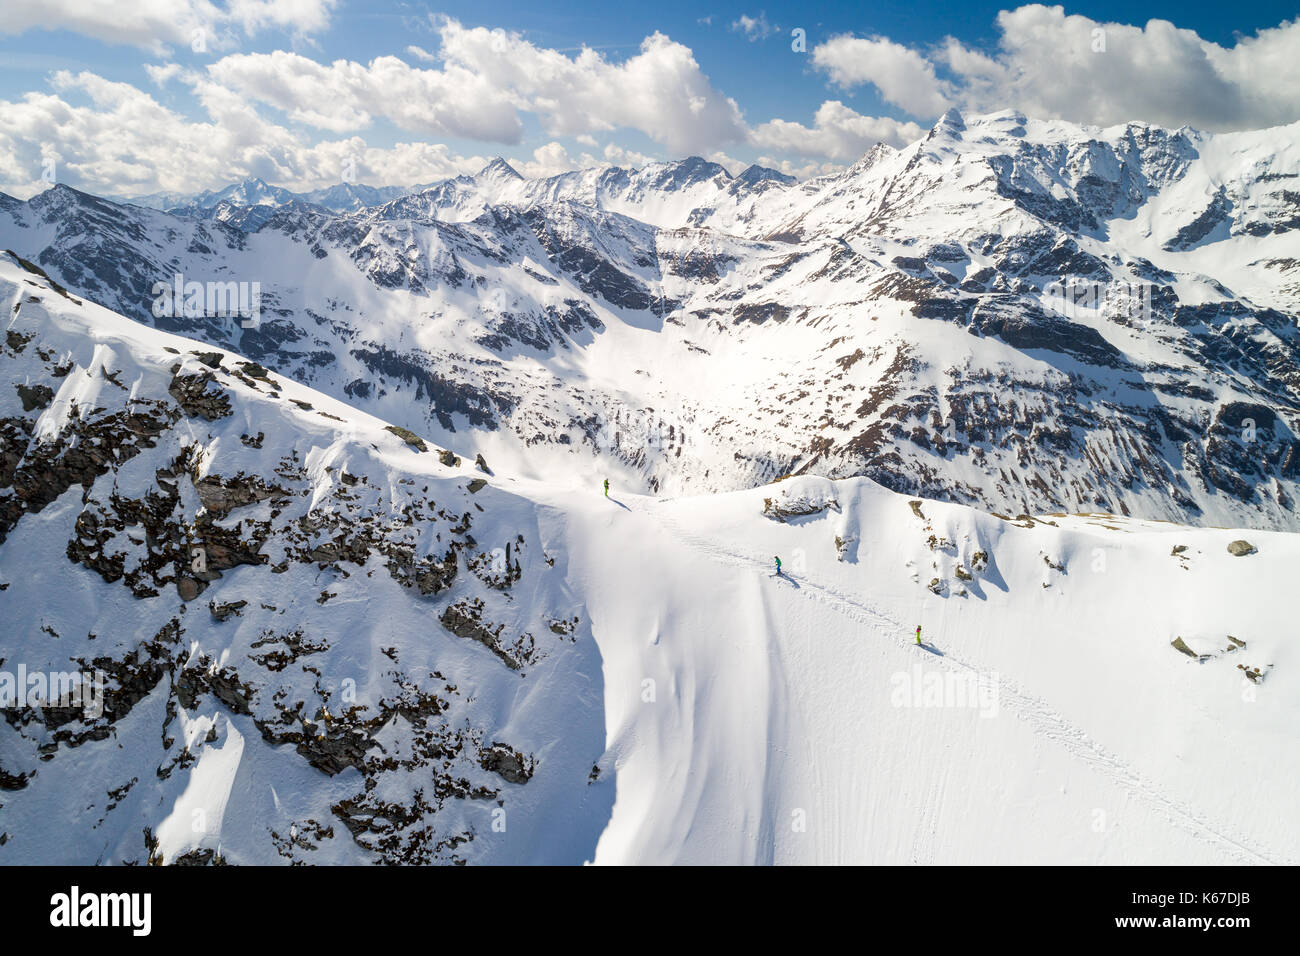 Luftbild von einer Gruppe von 3 Personen Skitouren Stockfoto